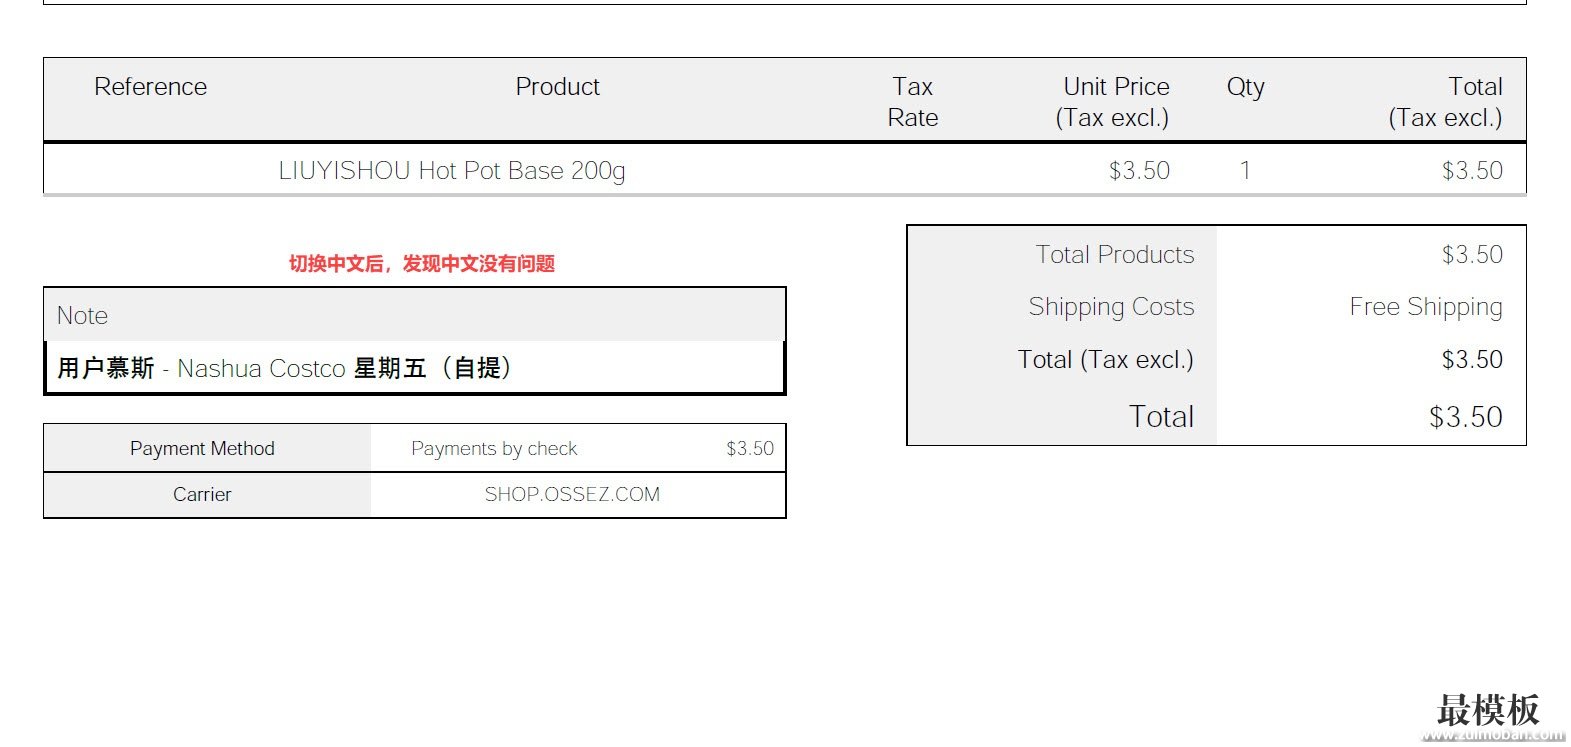 PrestaShop创建的发票中文显示方框乱码